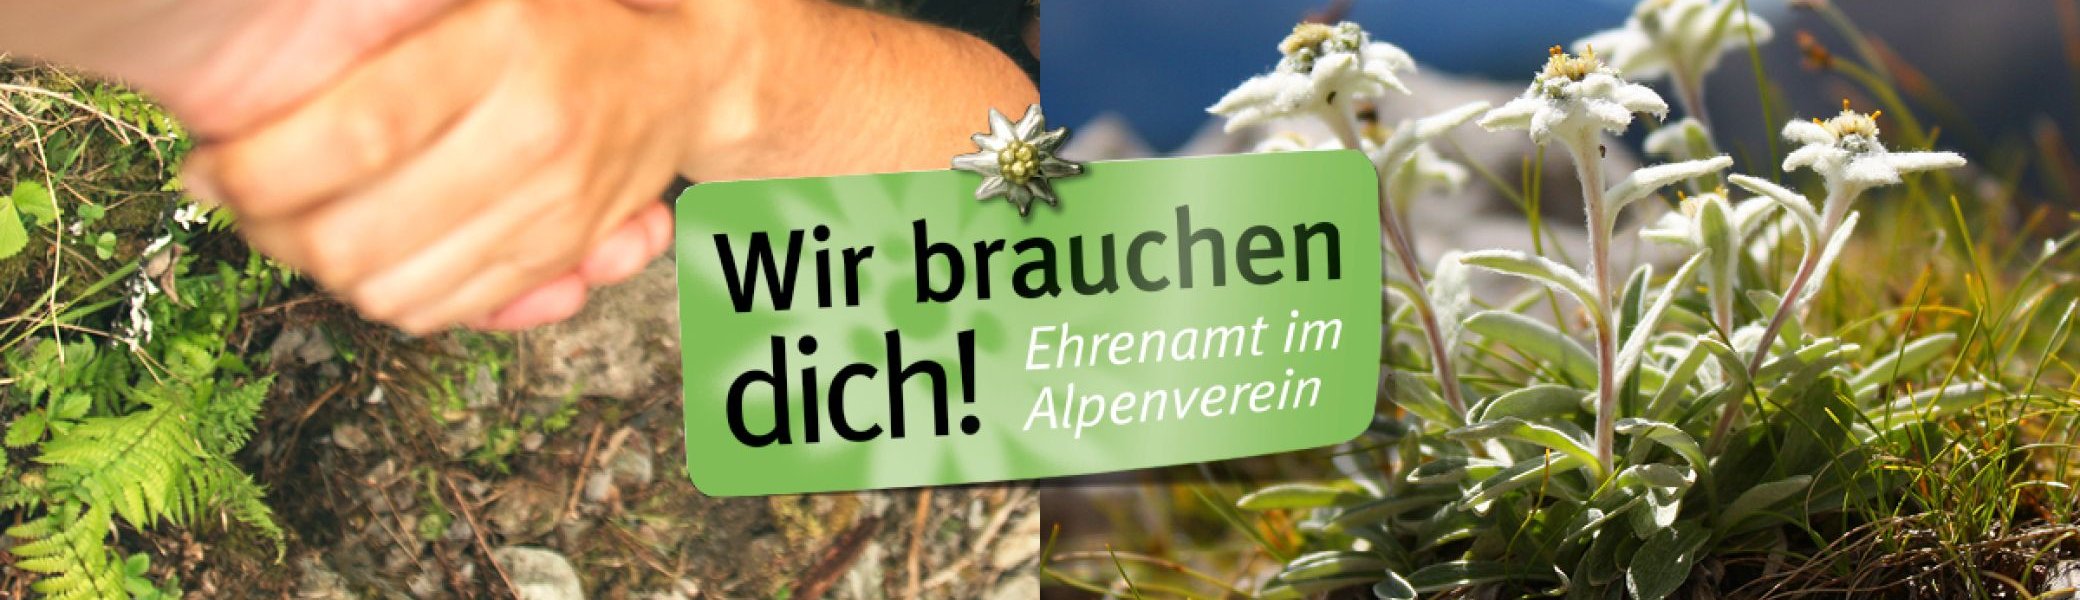 Banner mit zwei festhaltenden Händen und Bergen | © Deutscher Alpenverein e. V.